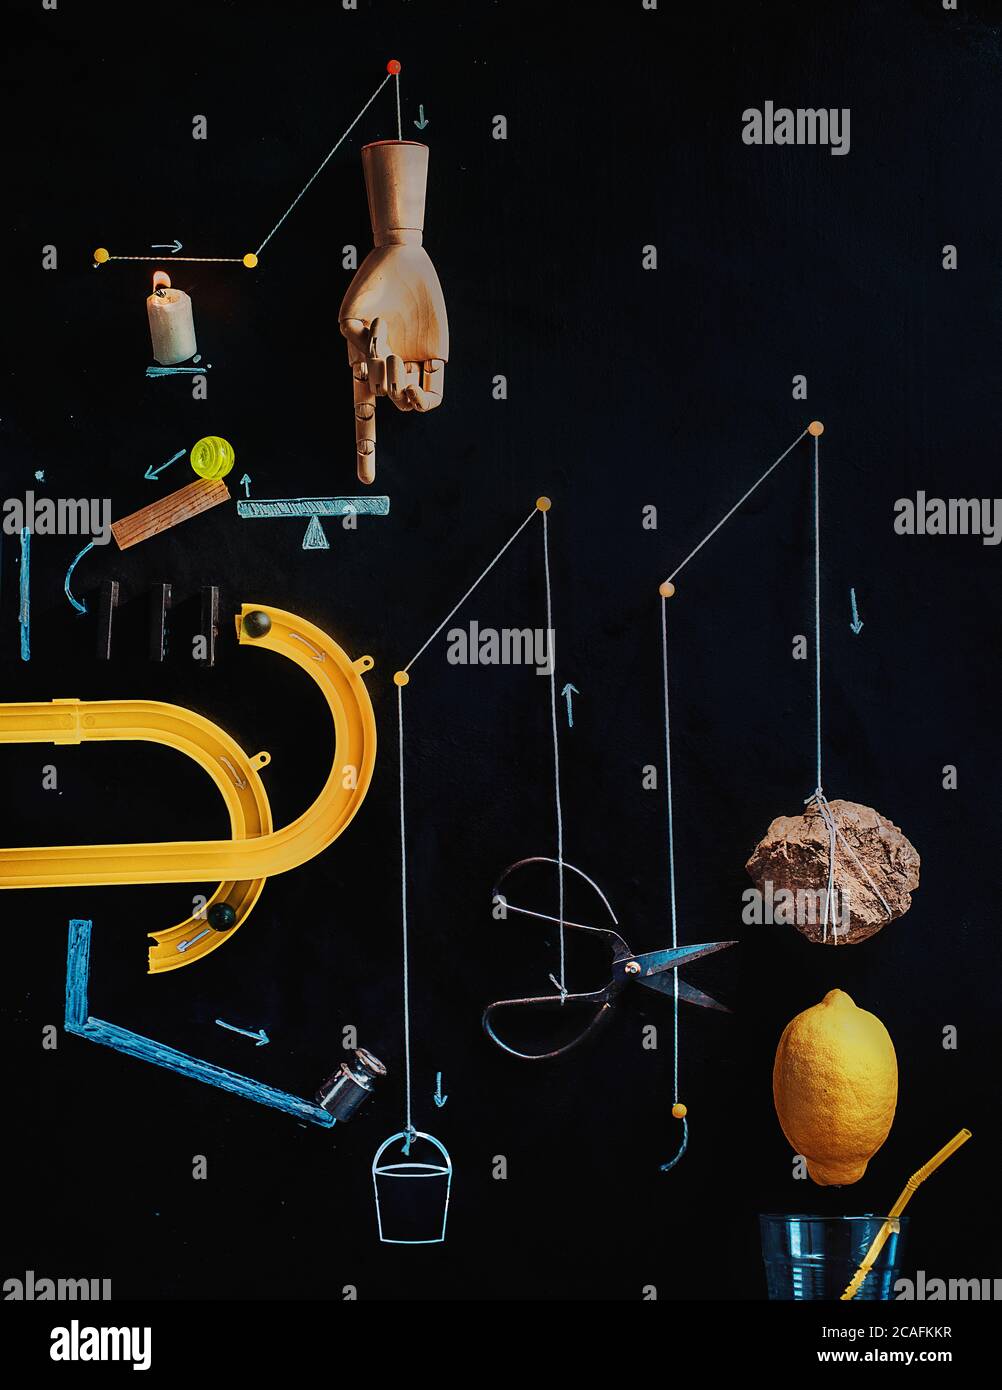 Herstellung Limonade flach legen, Rube Goldberg Maschine Referenz Stockfoto